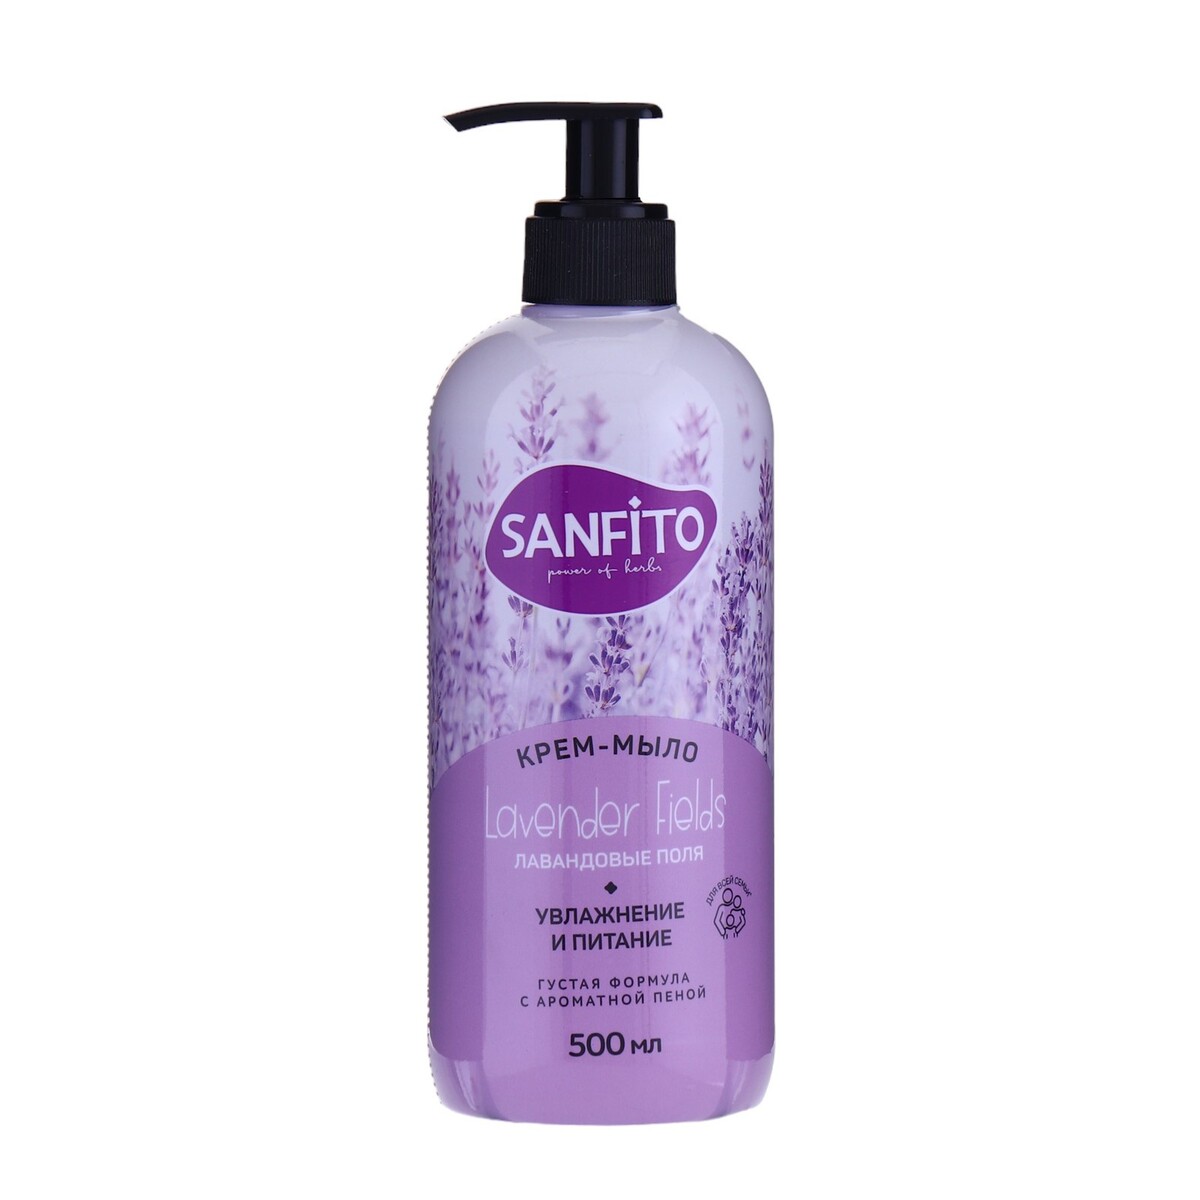 Sanfito крем-мыло sensitive, лавандовые поля, 500 мл крем мыло sanfito sensitive лавандовые поля 1 л